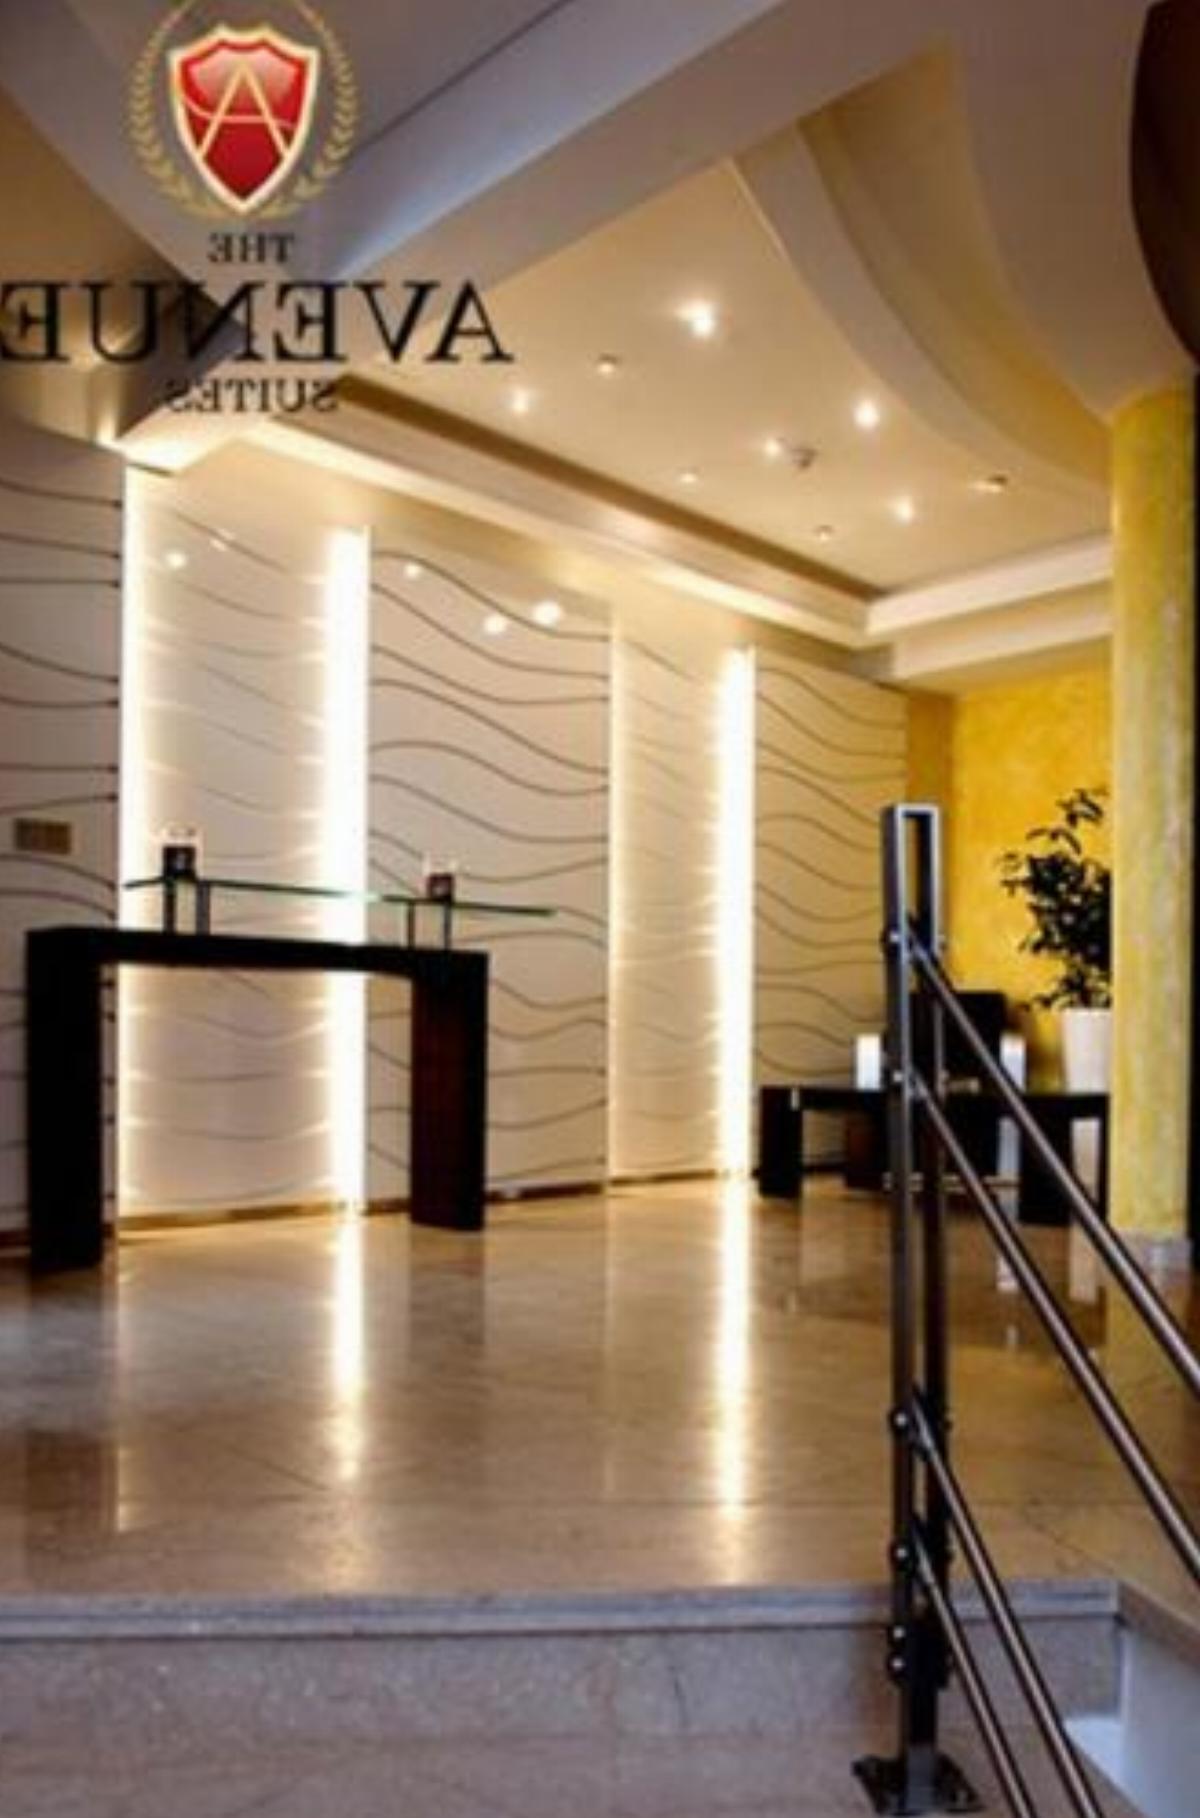 The Avenue Suites Hotel Lagos Nigeria